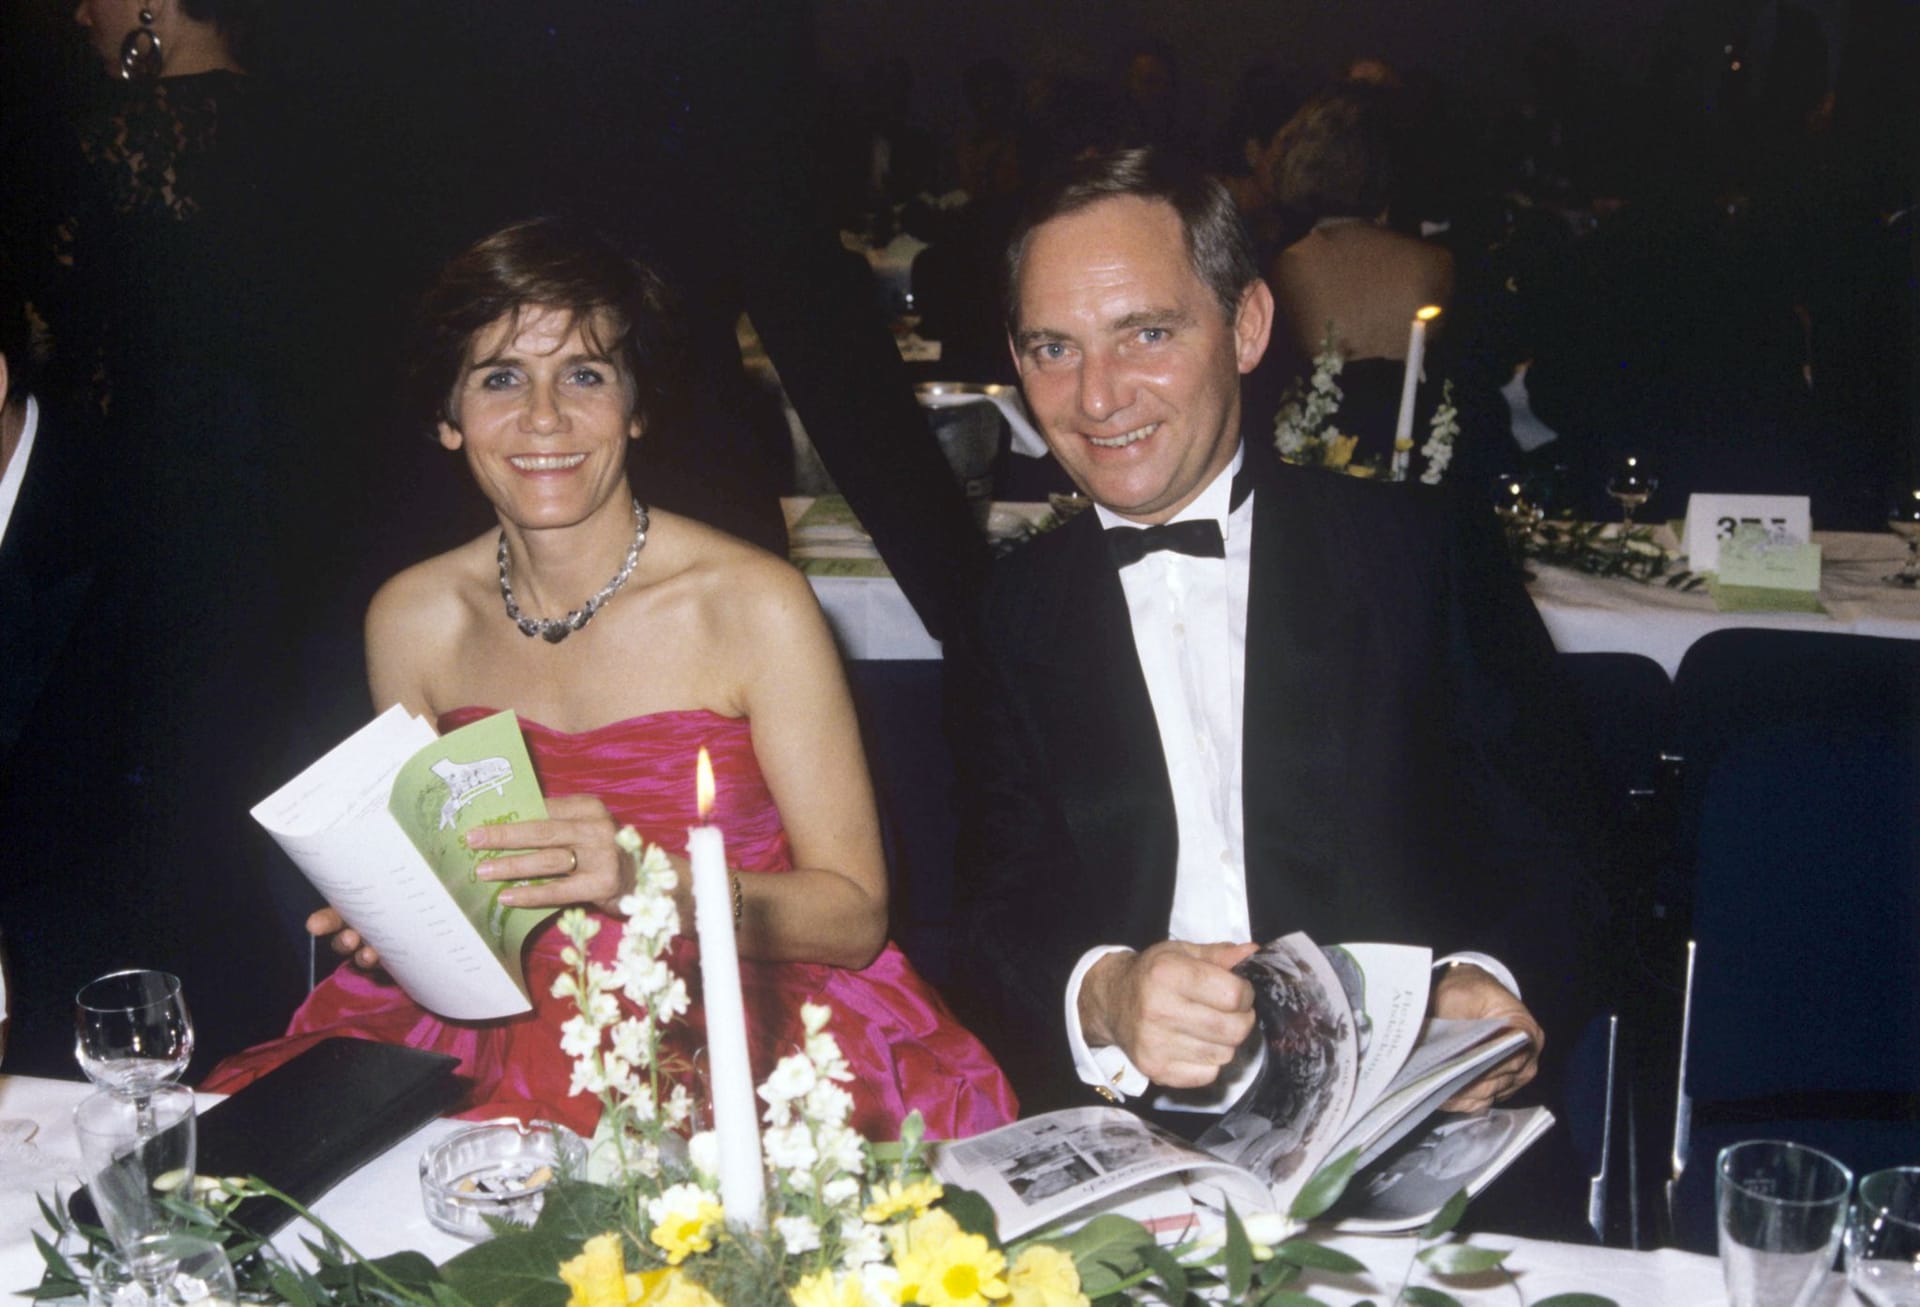 1972 wurde Schäuble das erste Mal Mitglied des Deutschen Bundestags. Unter dem damaligen Bundeskanzler Helmut Kohl war von 1984 Bundesminister für besondere Aufgaben und Chef des Bundeskanzleramtes, 1989 wurde er zum Bundesinnenminister ernannt. Das Foto zeigt ihn und seine Frau Ingeborg auf dem Bundespresseball 1988.